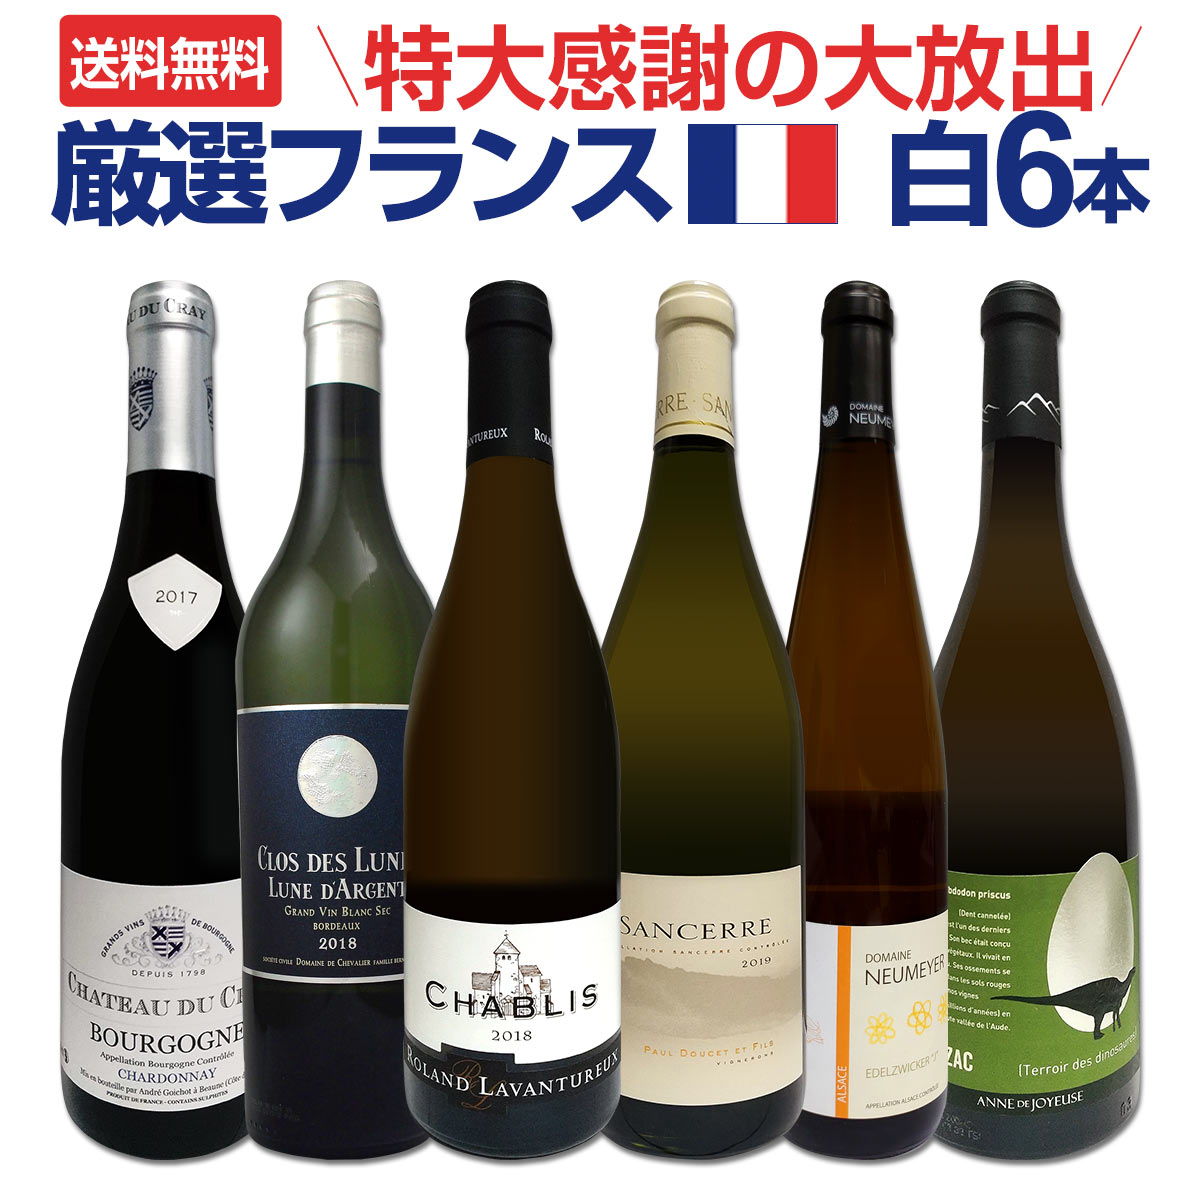 【送料無料】特大感謝の厳選フランス白ワイン大放出6本セット!!